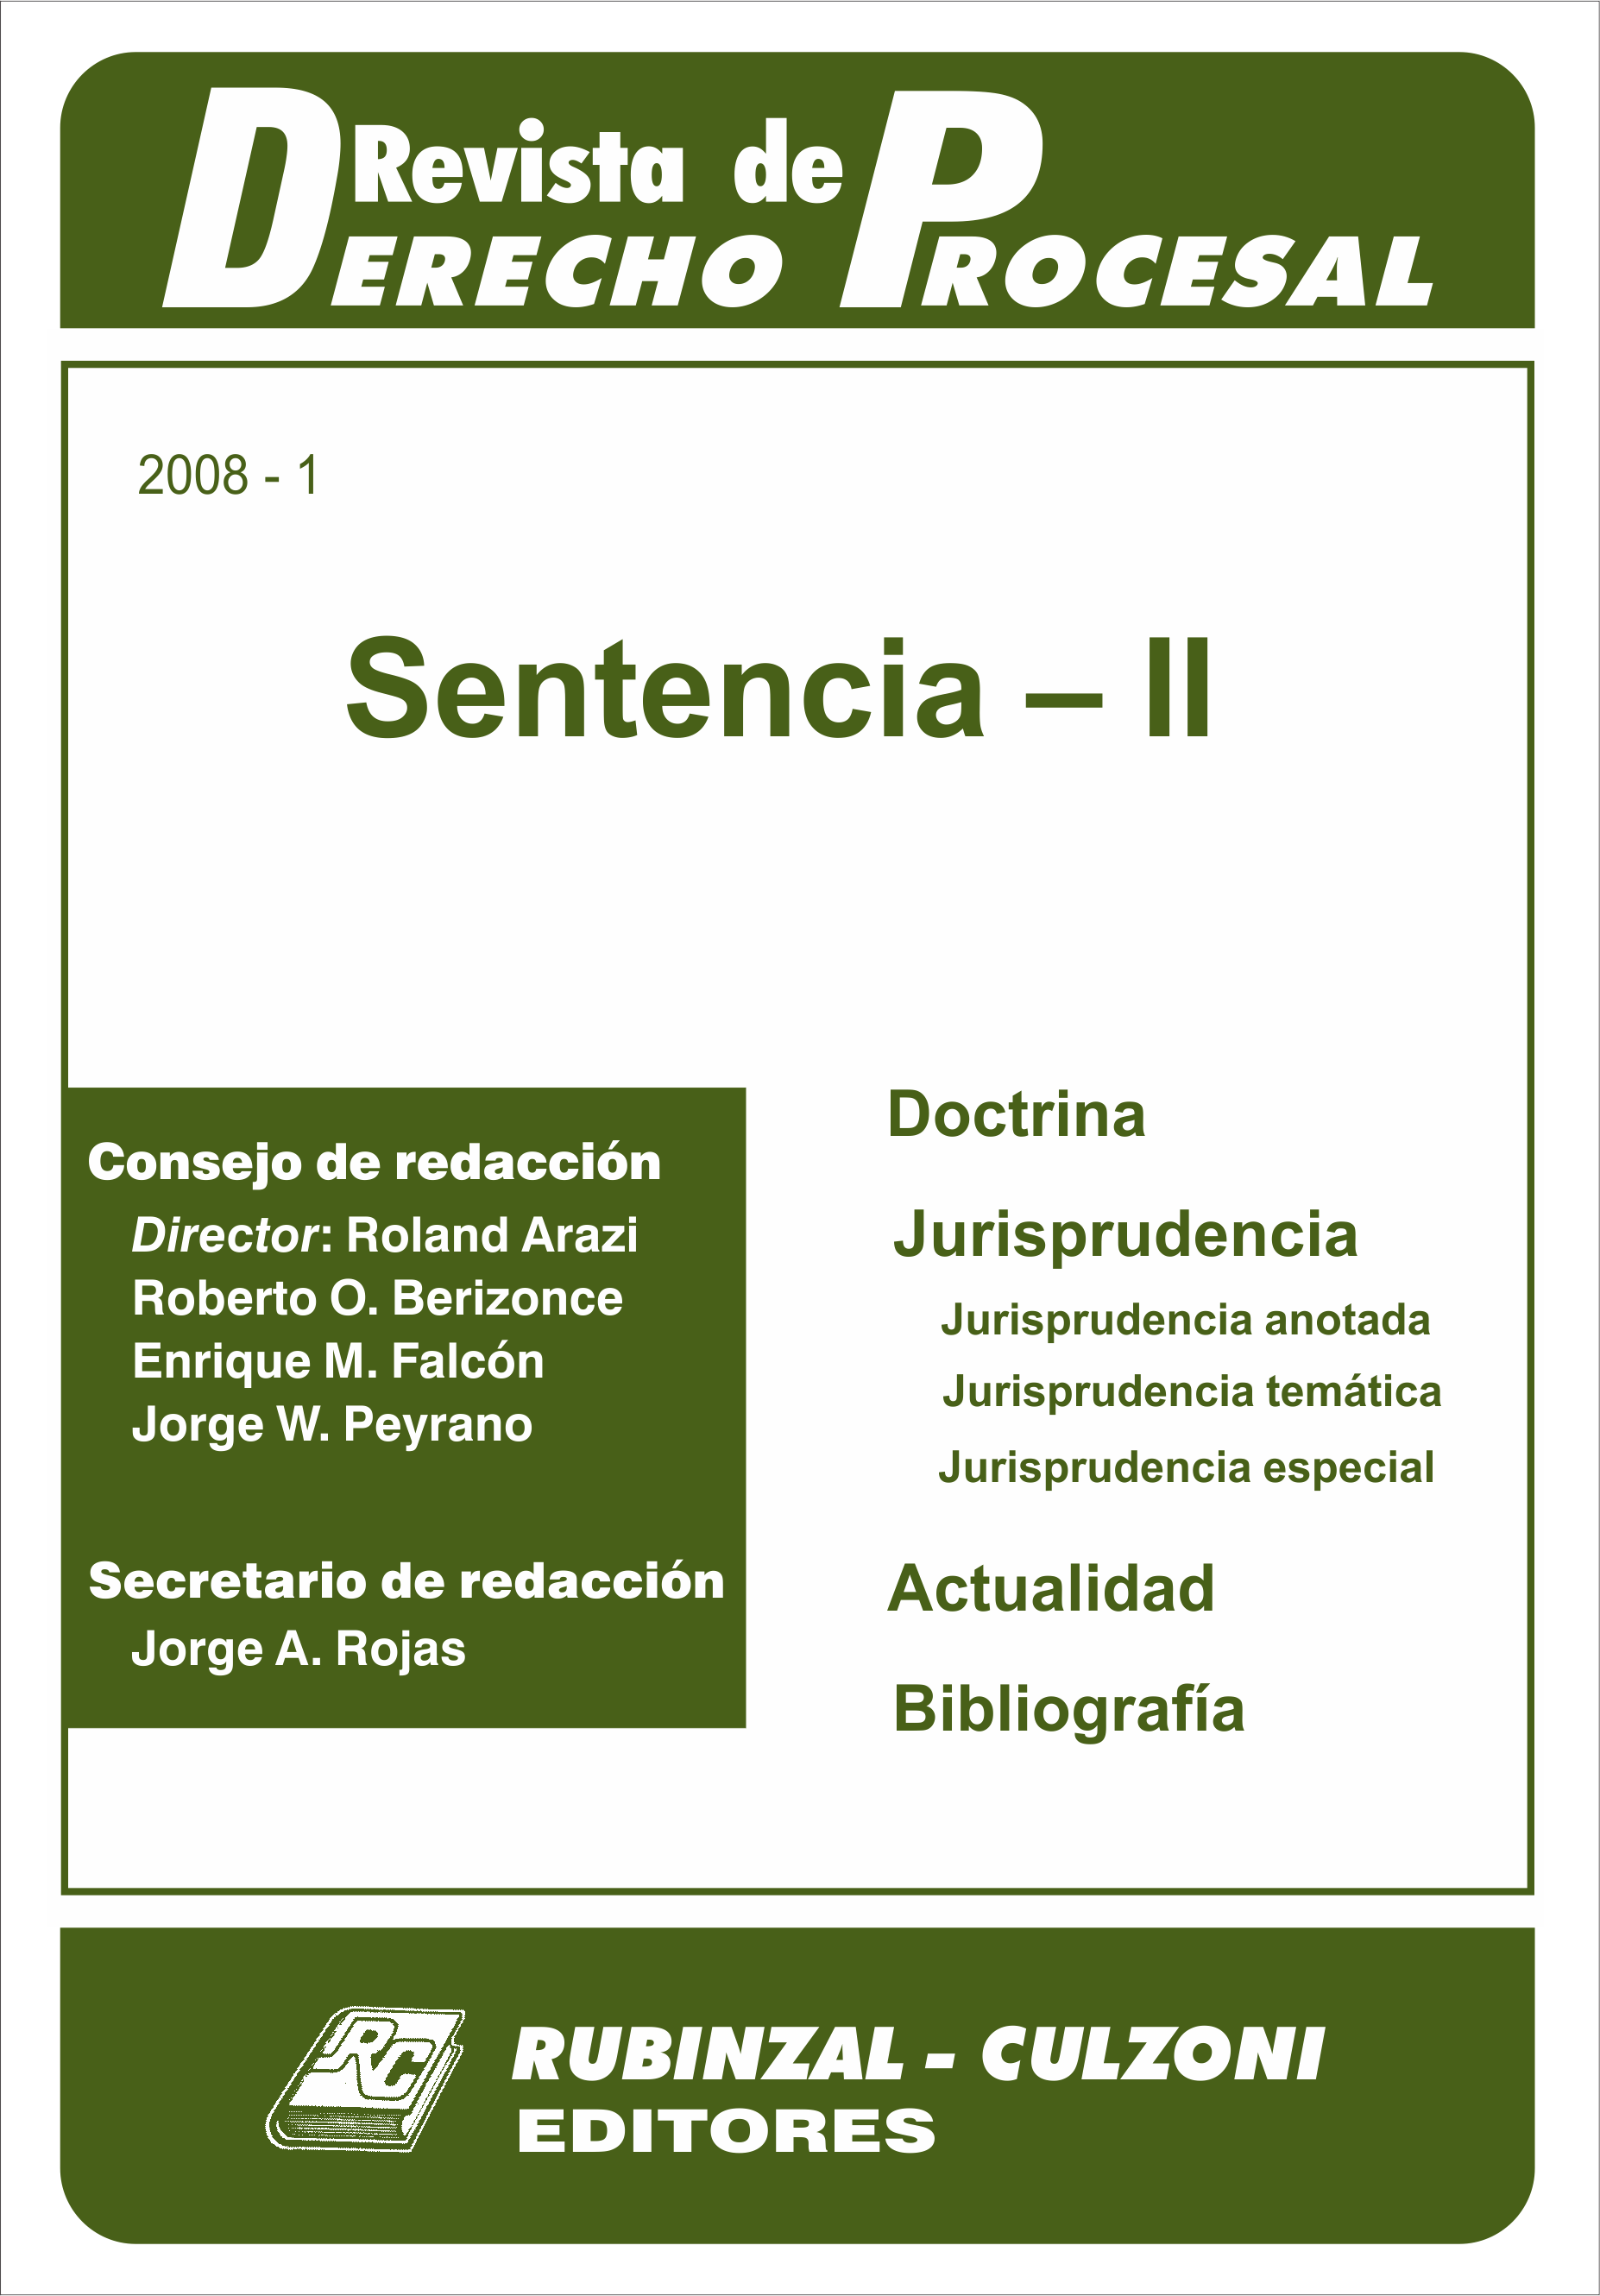 Revista de Derecho Procesal - Sentencia - II